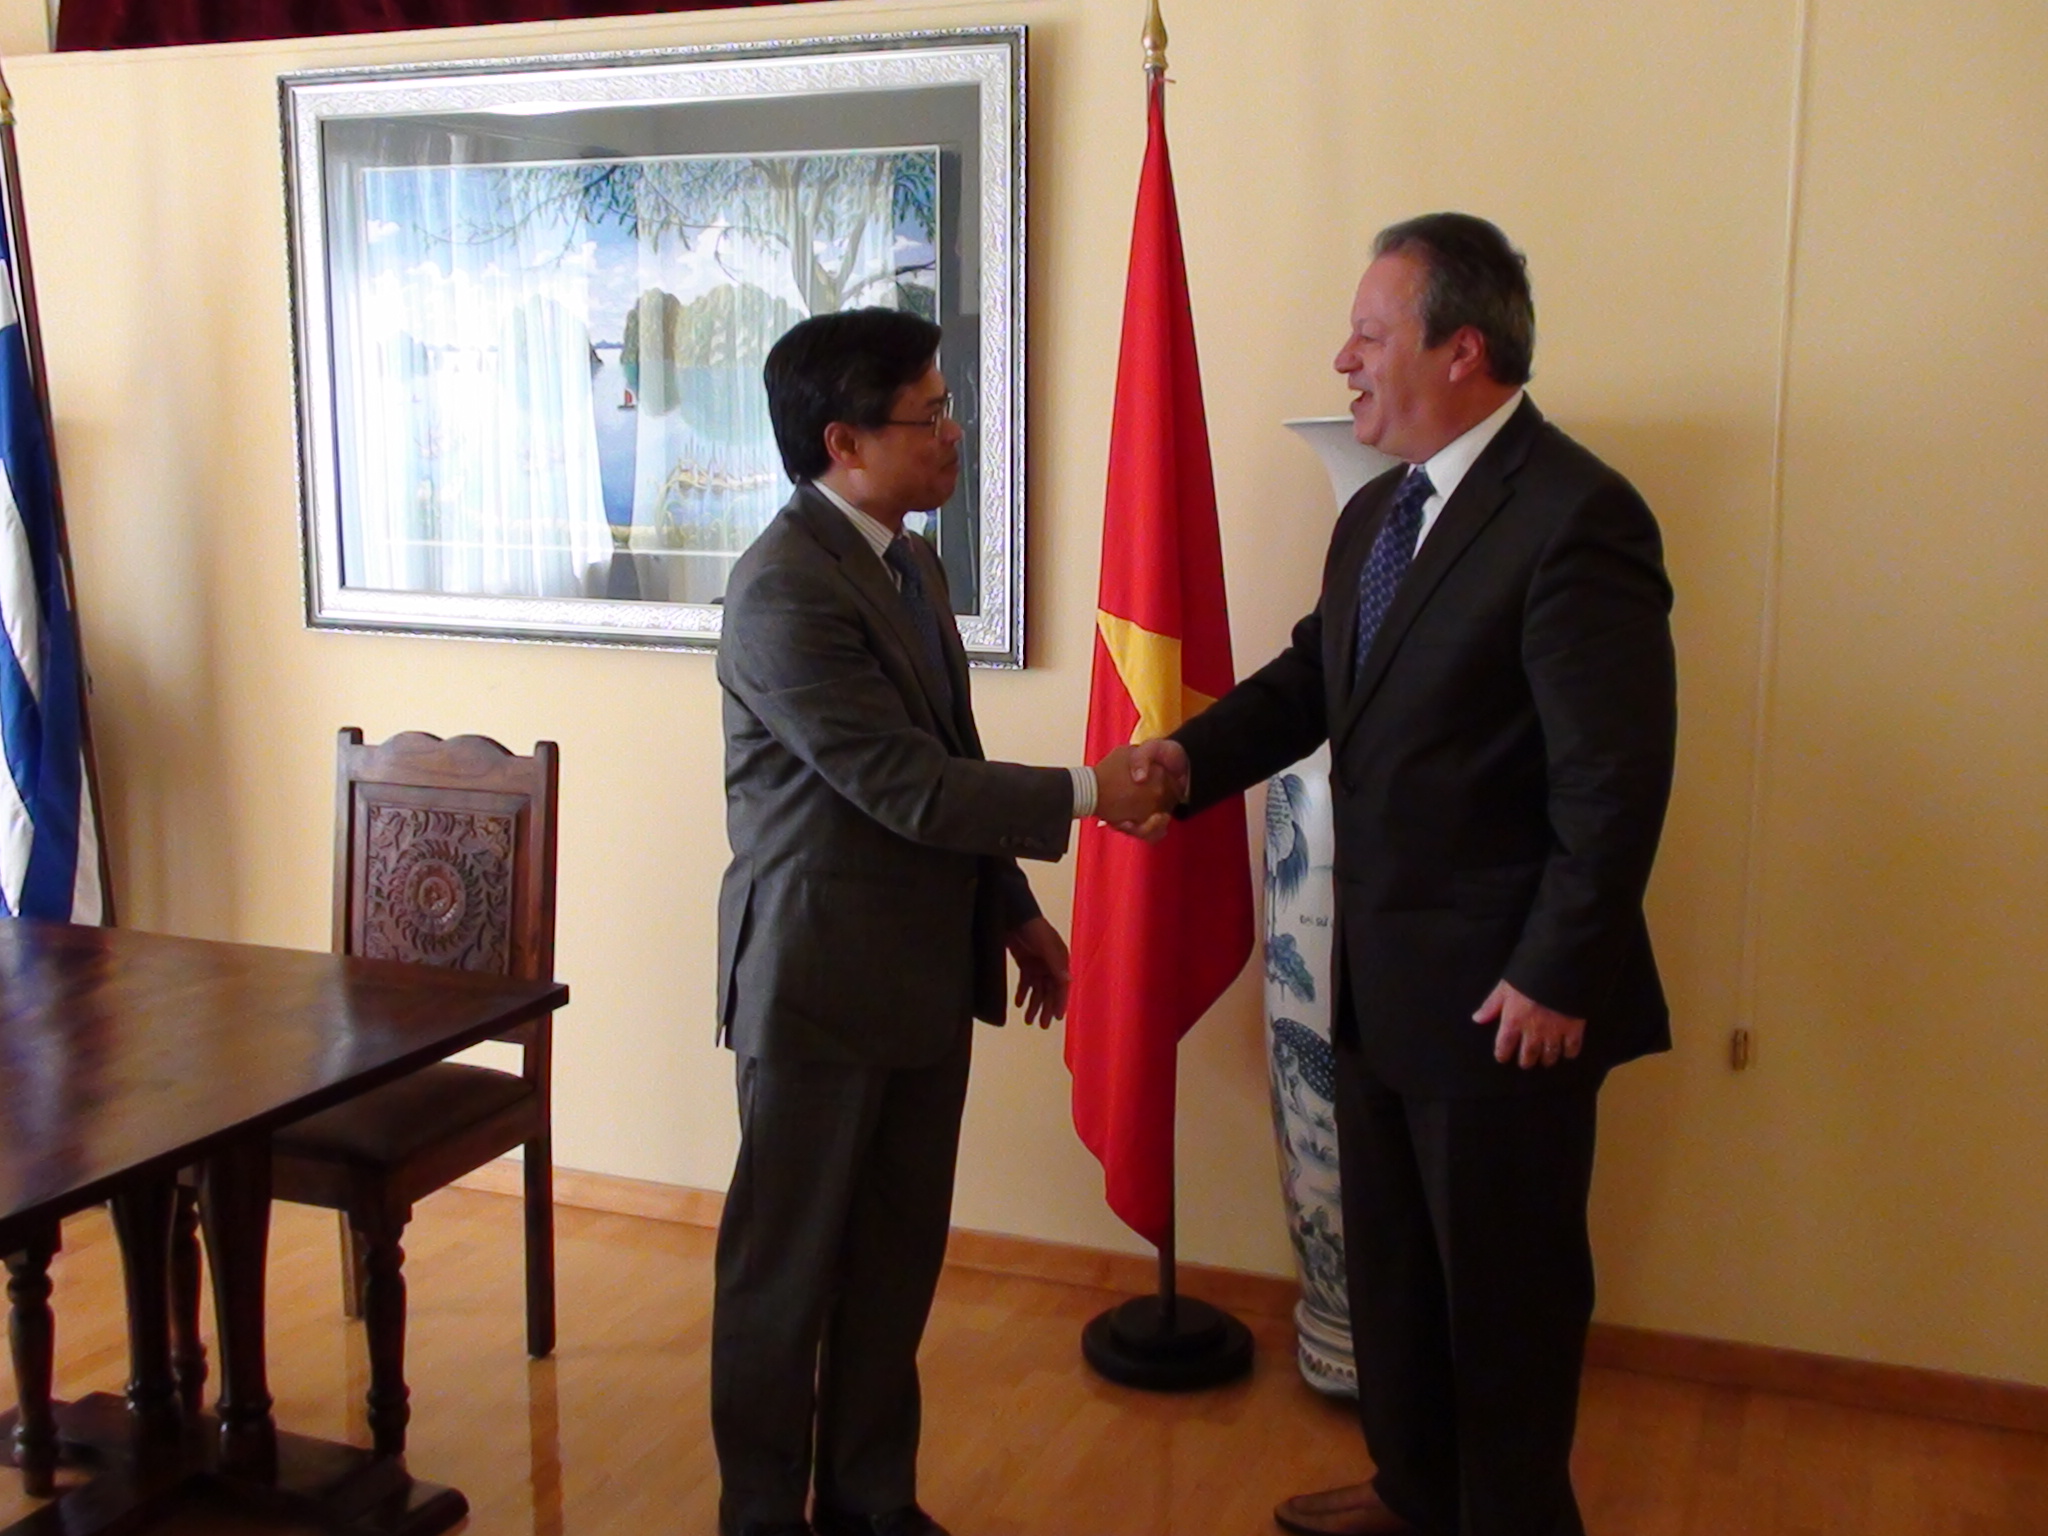 Επίσημη επίσκεψη, στην Πρεσβεία της Σοσιαλιστικής Δημοκρατίας του Βιετνάμ πραγματοποίησε ο Γραμματέας του Περιφερειακού Συμβουλίου Πελοποννήσου, Λάμπρος Μπούκλης, προσκεκλημένος του κου Πρέσβη Binh VU